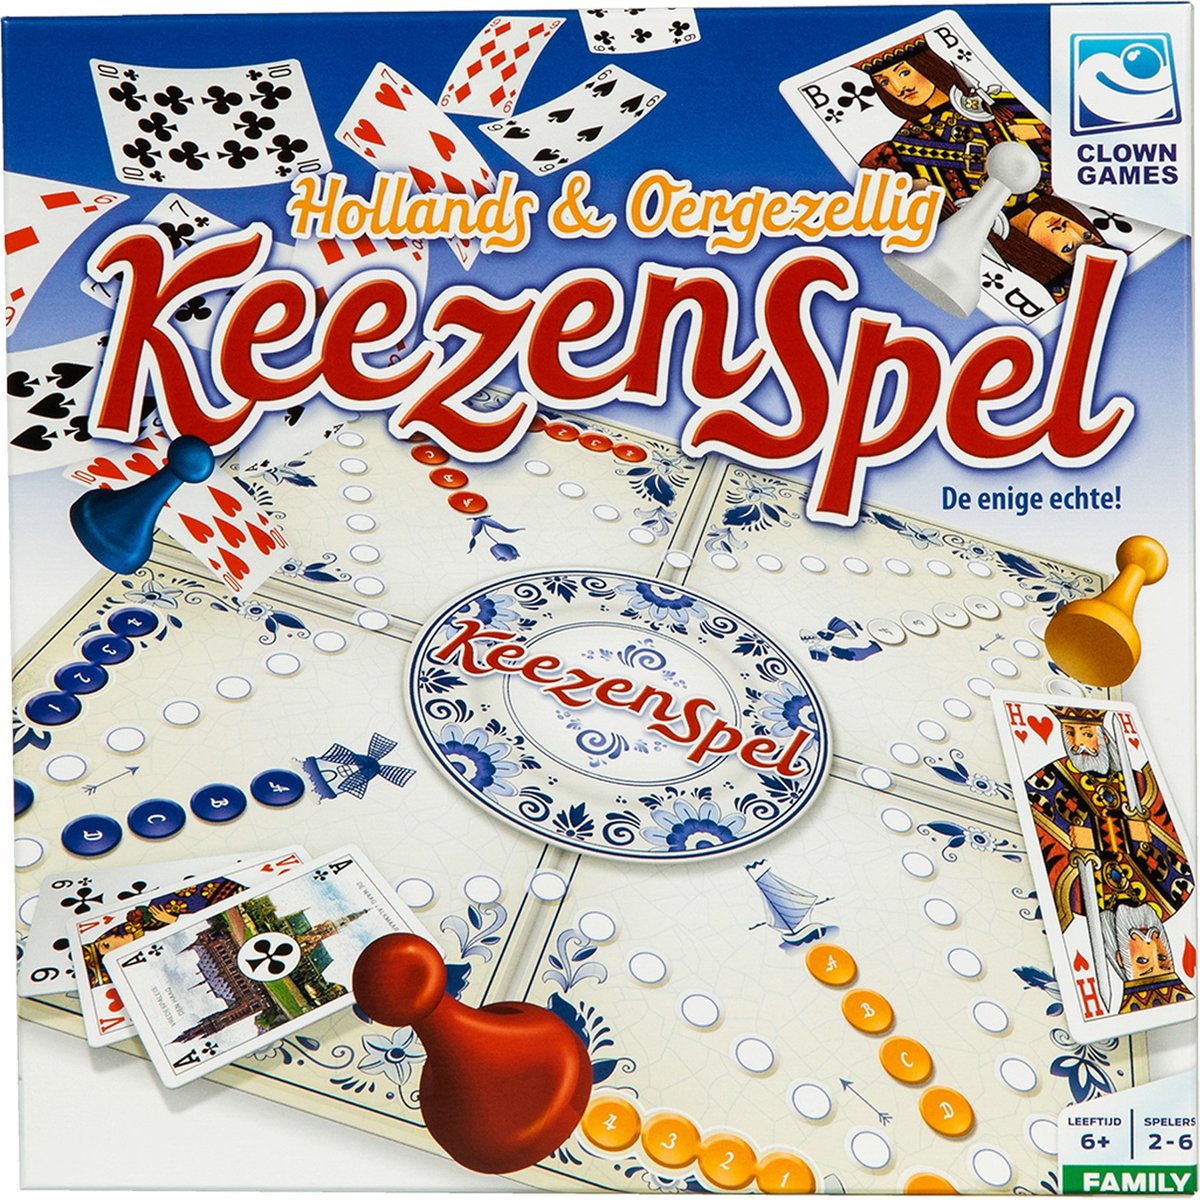 Clown Games Keezenspel | Games bol.com